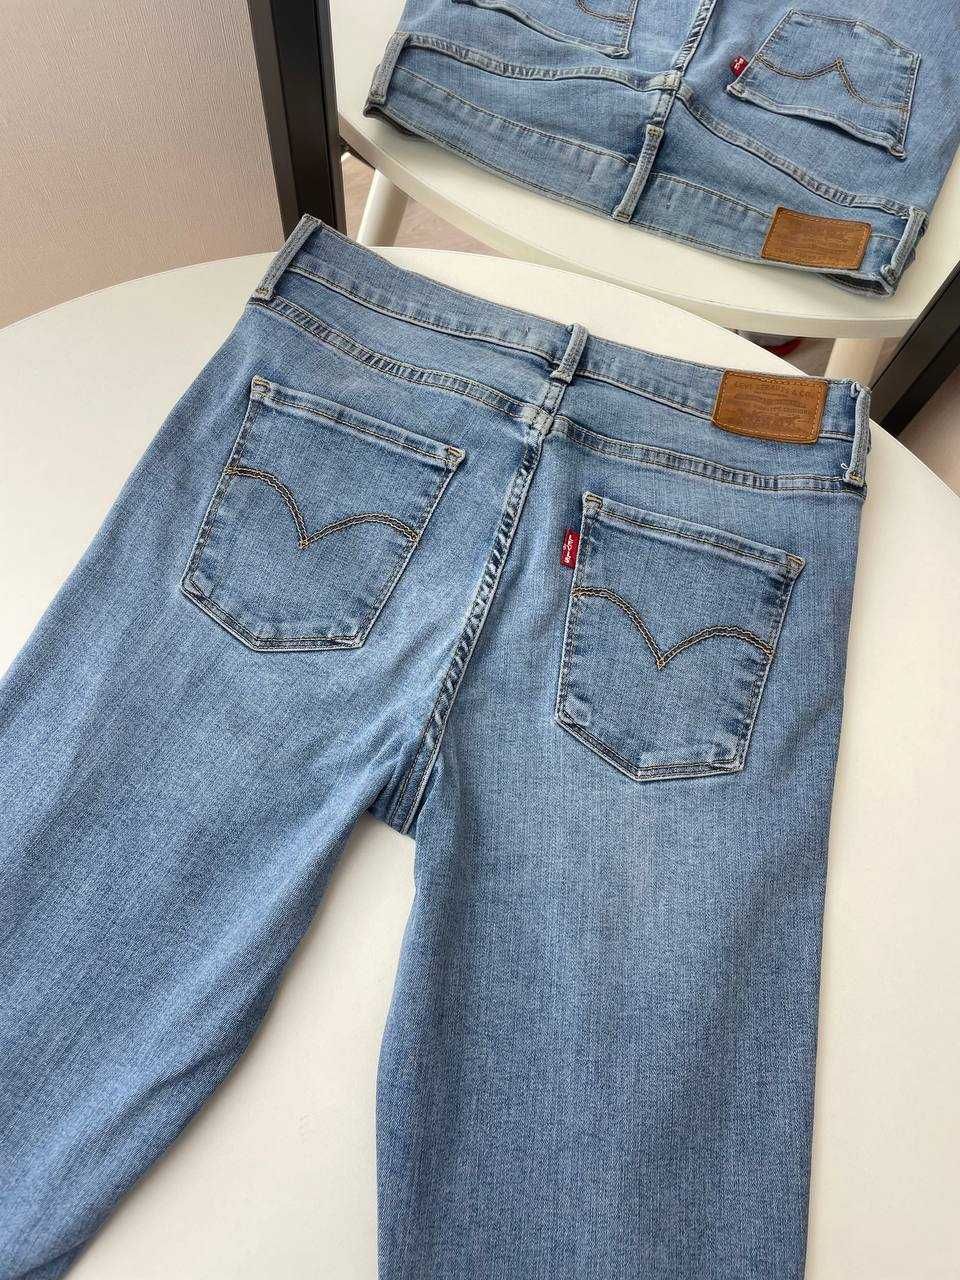 29/М Джинси Levi’s Premium 310 shaping super skinny джинсы оригинал